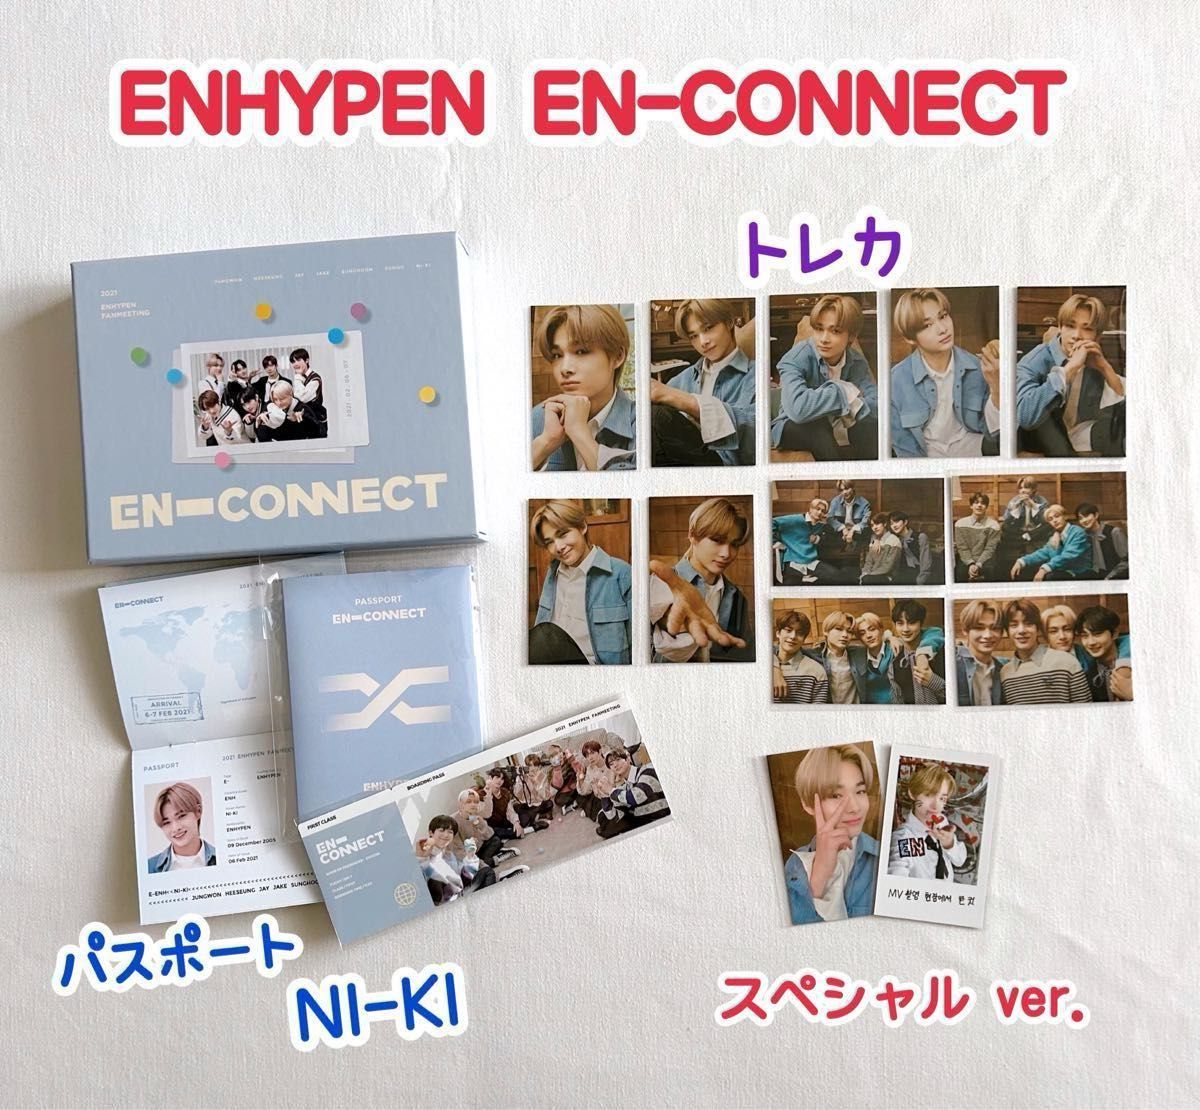 ENHYPEN EN-CONNECT DVD 日本語字幕 トレカ まとめ売り エンコネ パスポート ニキ 公式 DVD未再生